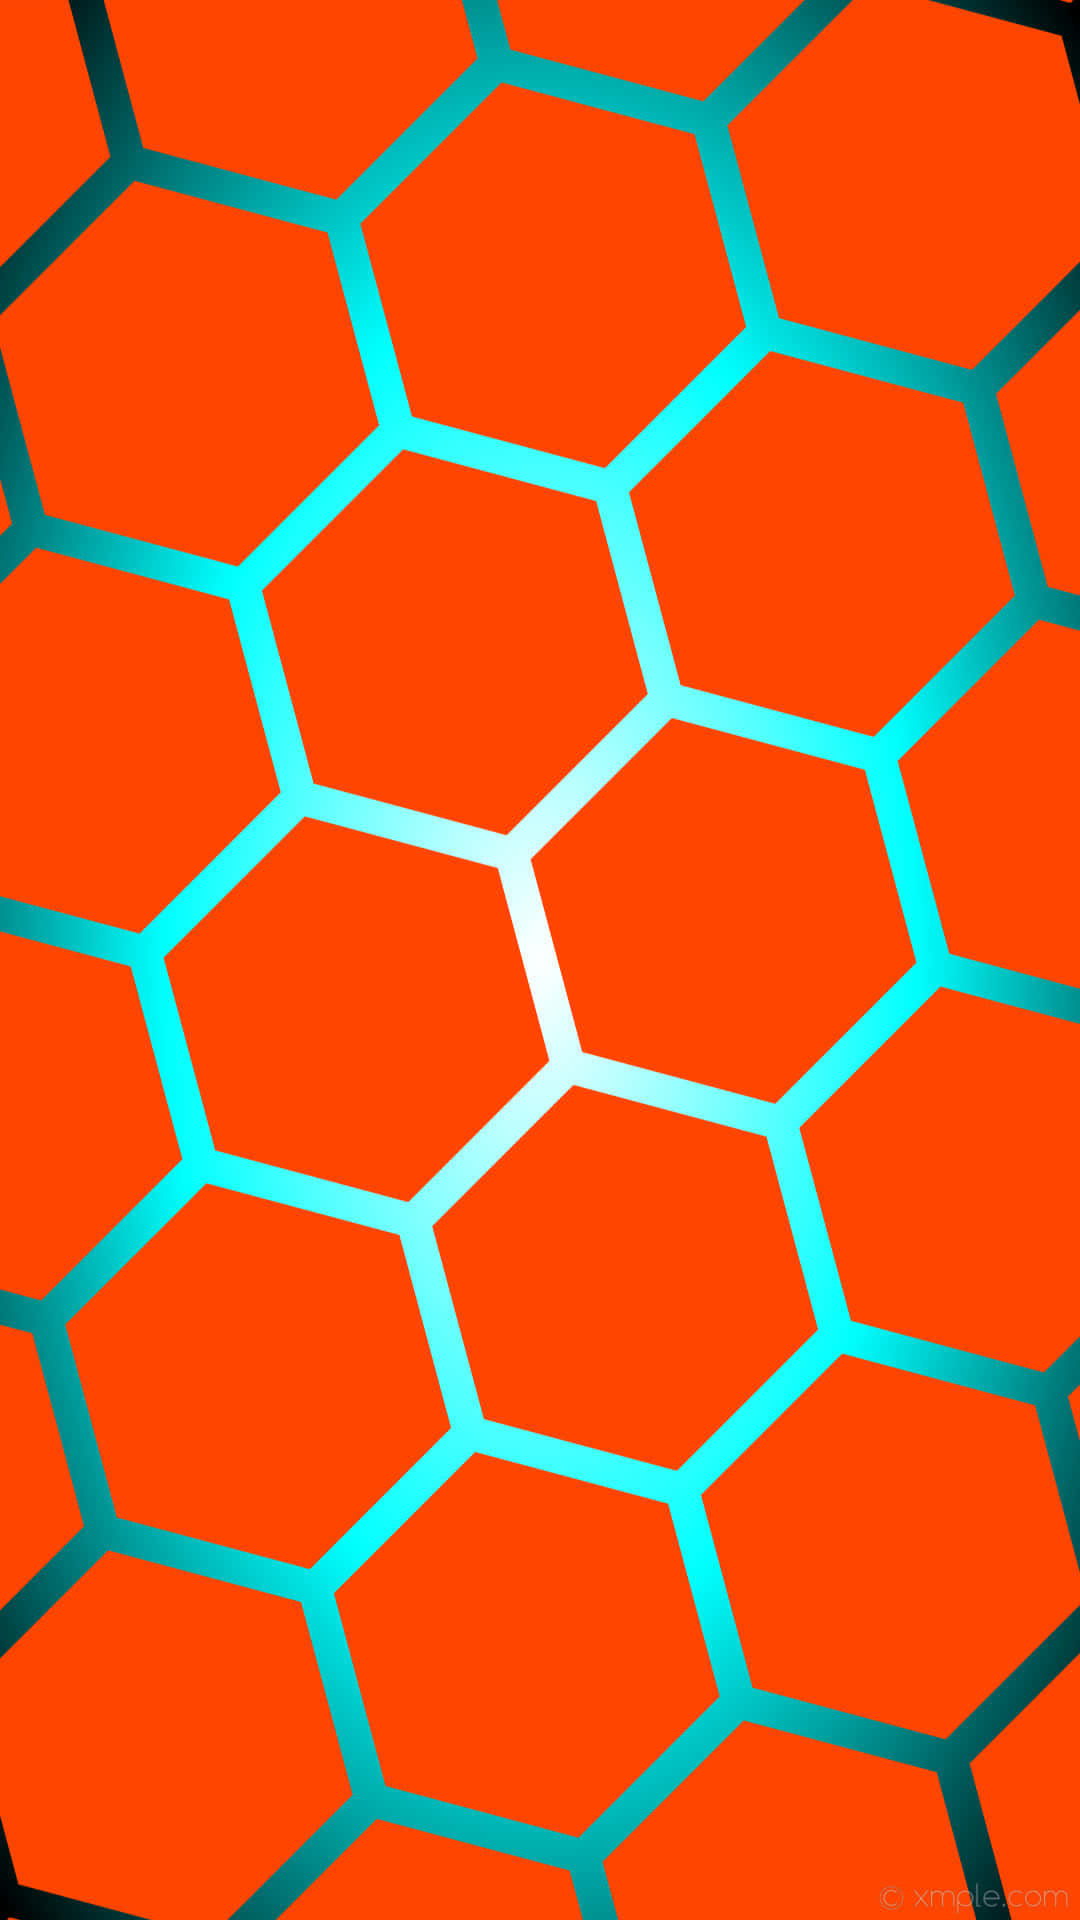 Einelebendige Orange- Und Blau-farbpalette Aus Geometrischen Formen In Einem Modernen Design. Wallpaper